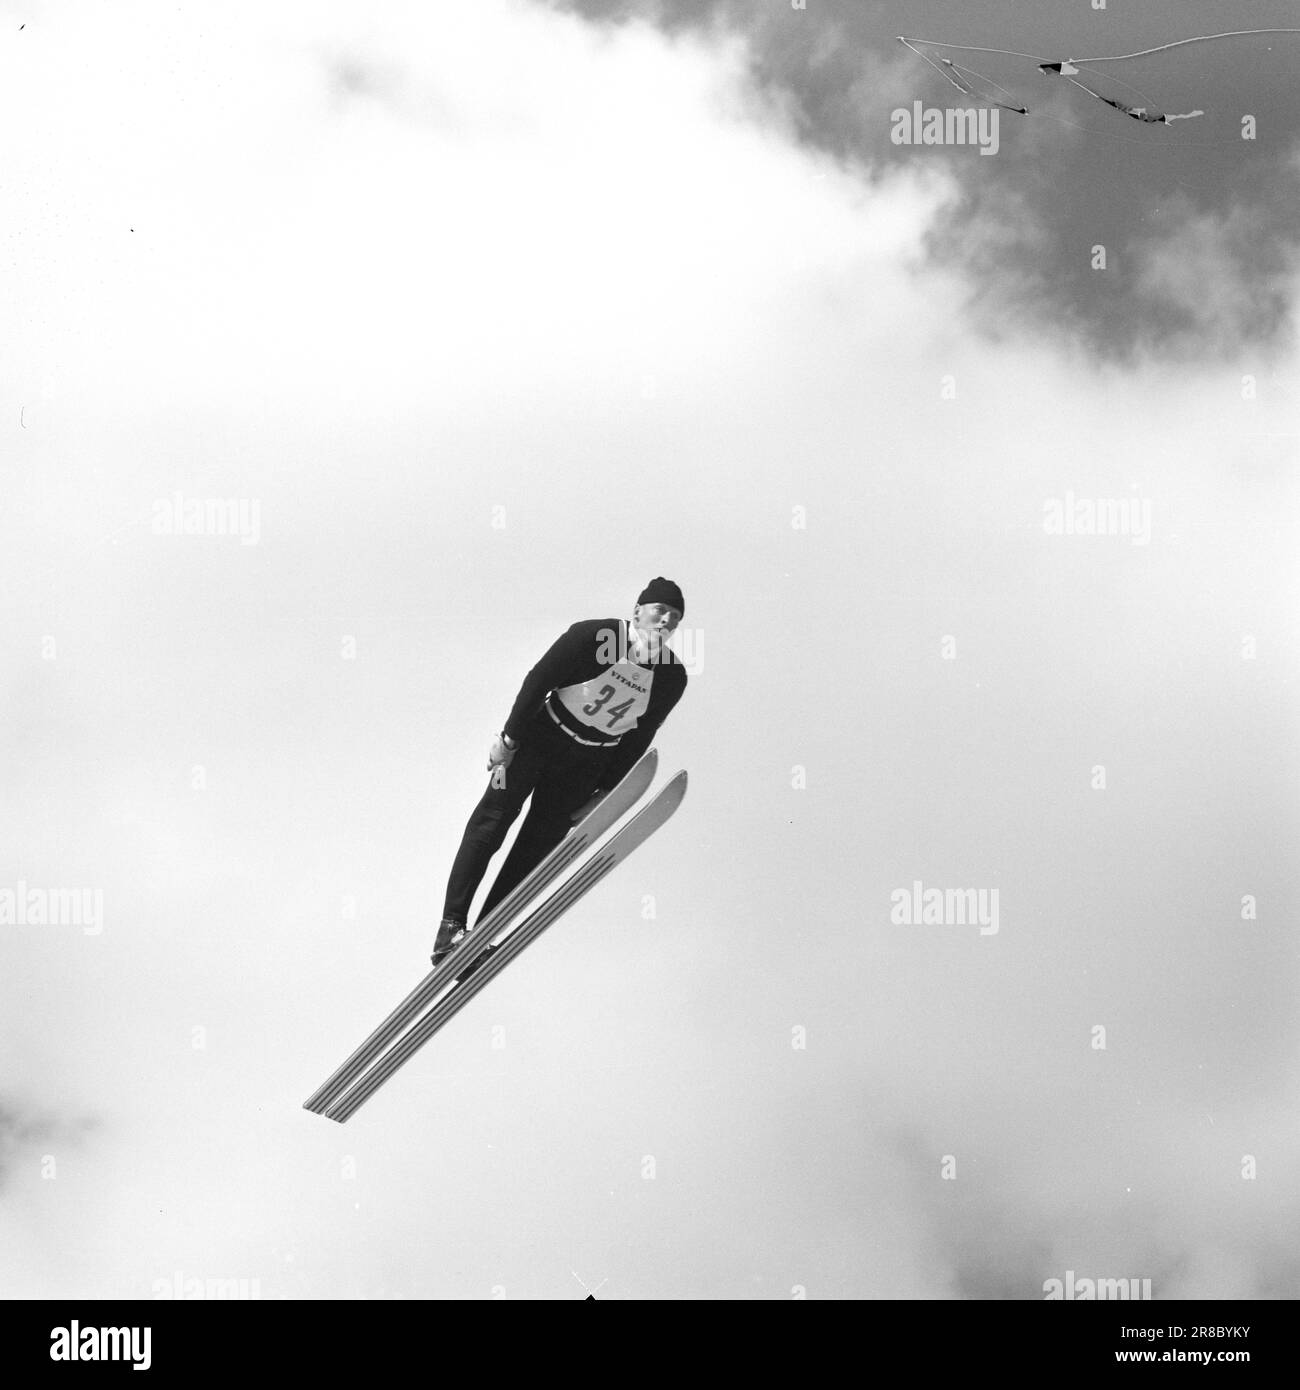 Actuel 15-3-1960: Nous avons gagné et nous avons gagné... Les cavaliers ont recueilli des records d'audience et les skieurs de fond ont fait l'histoire du ski. Photo: Sverre A. Børretzen / Aage Storløkken / Aktuell / NTB ***PHOTO NON TRAITÉE*** Banque D'Images